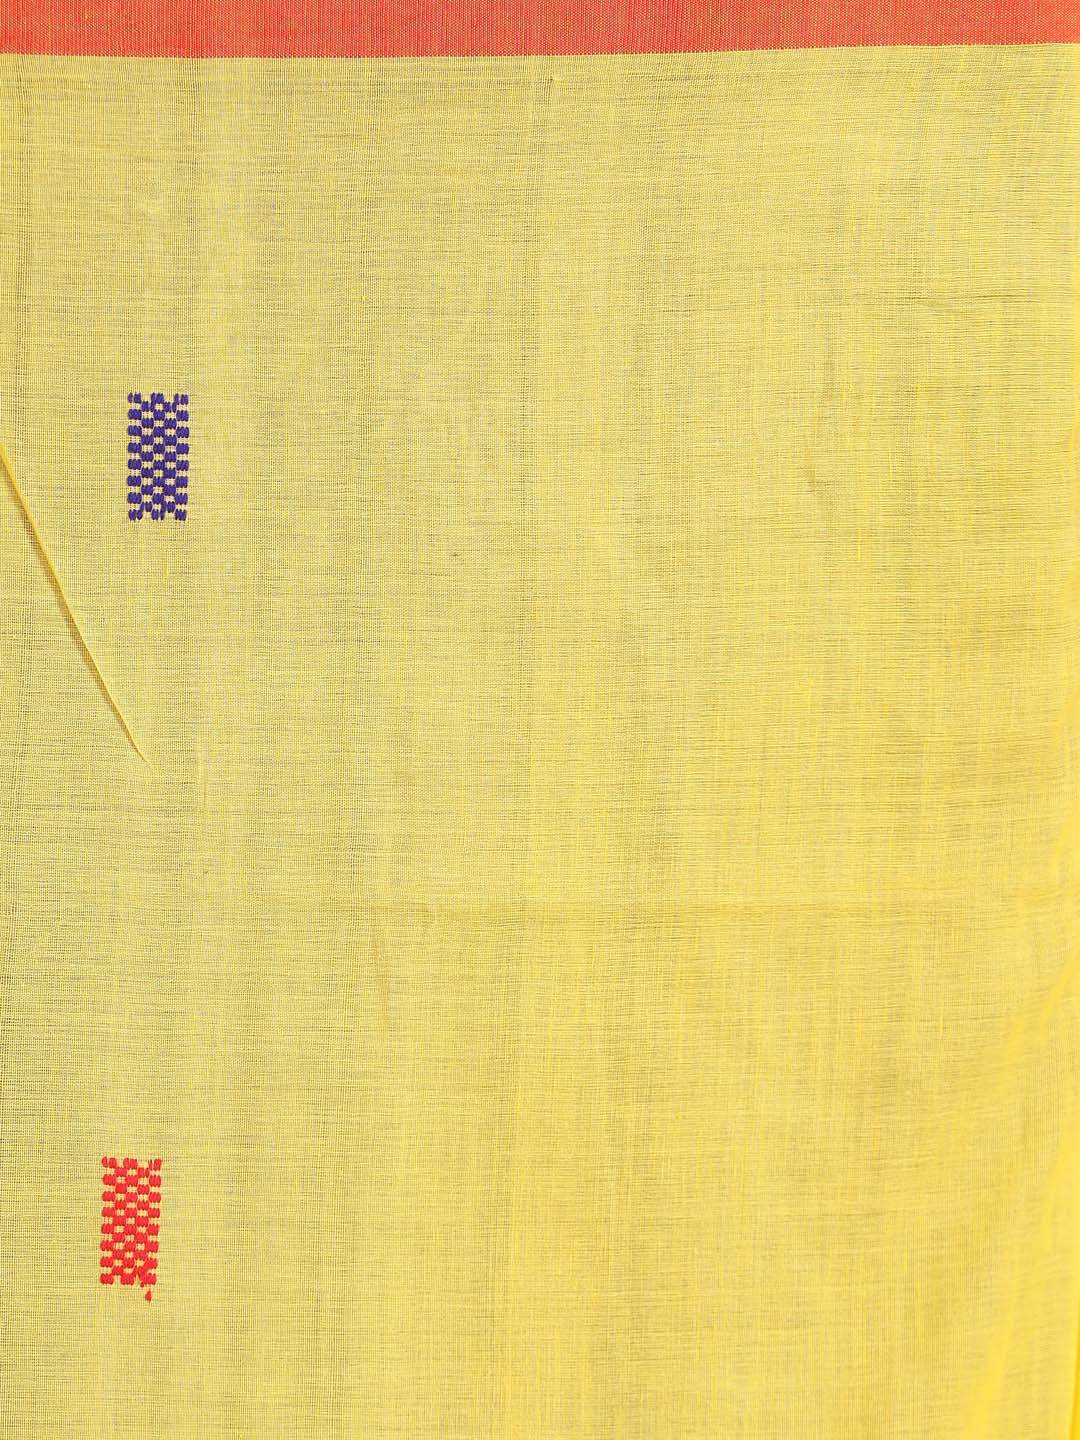 Indethnic Yellow Bengal Handloom Pure Cotton Saree Work Saree - Saree Detail View